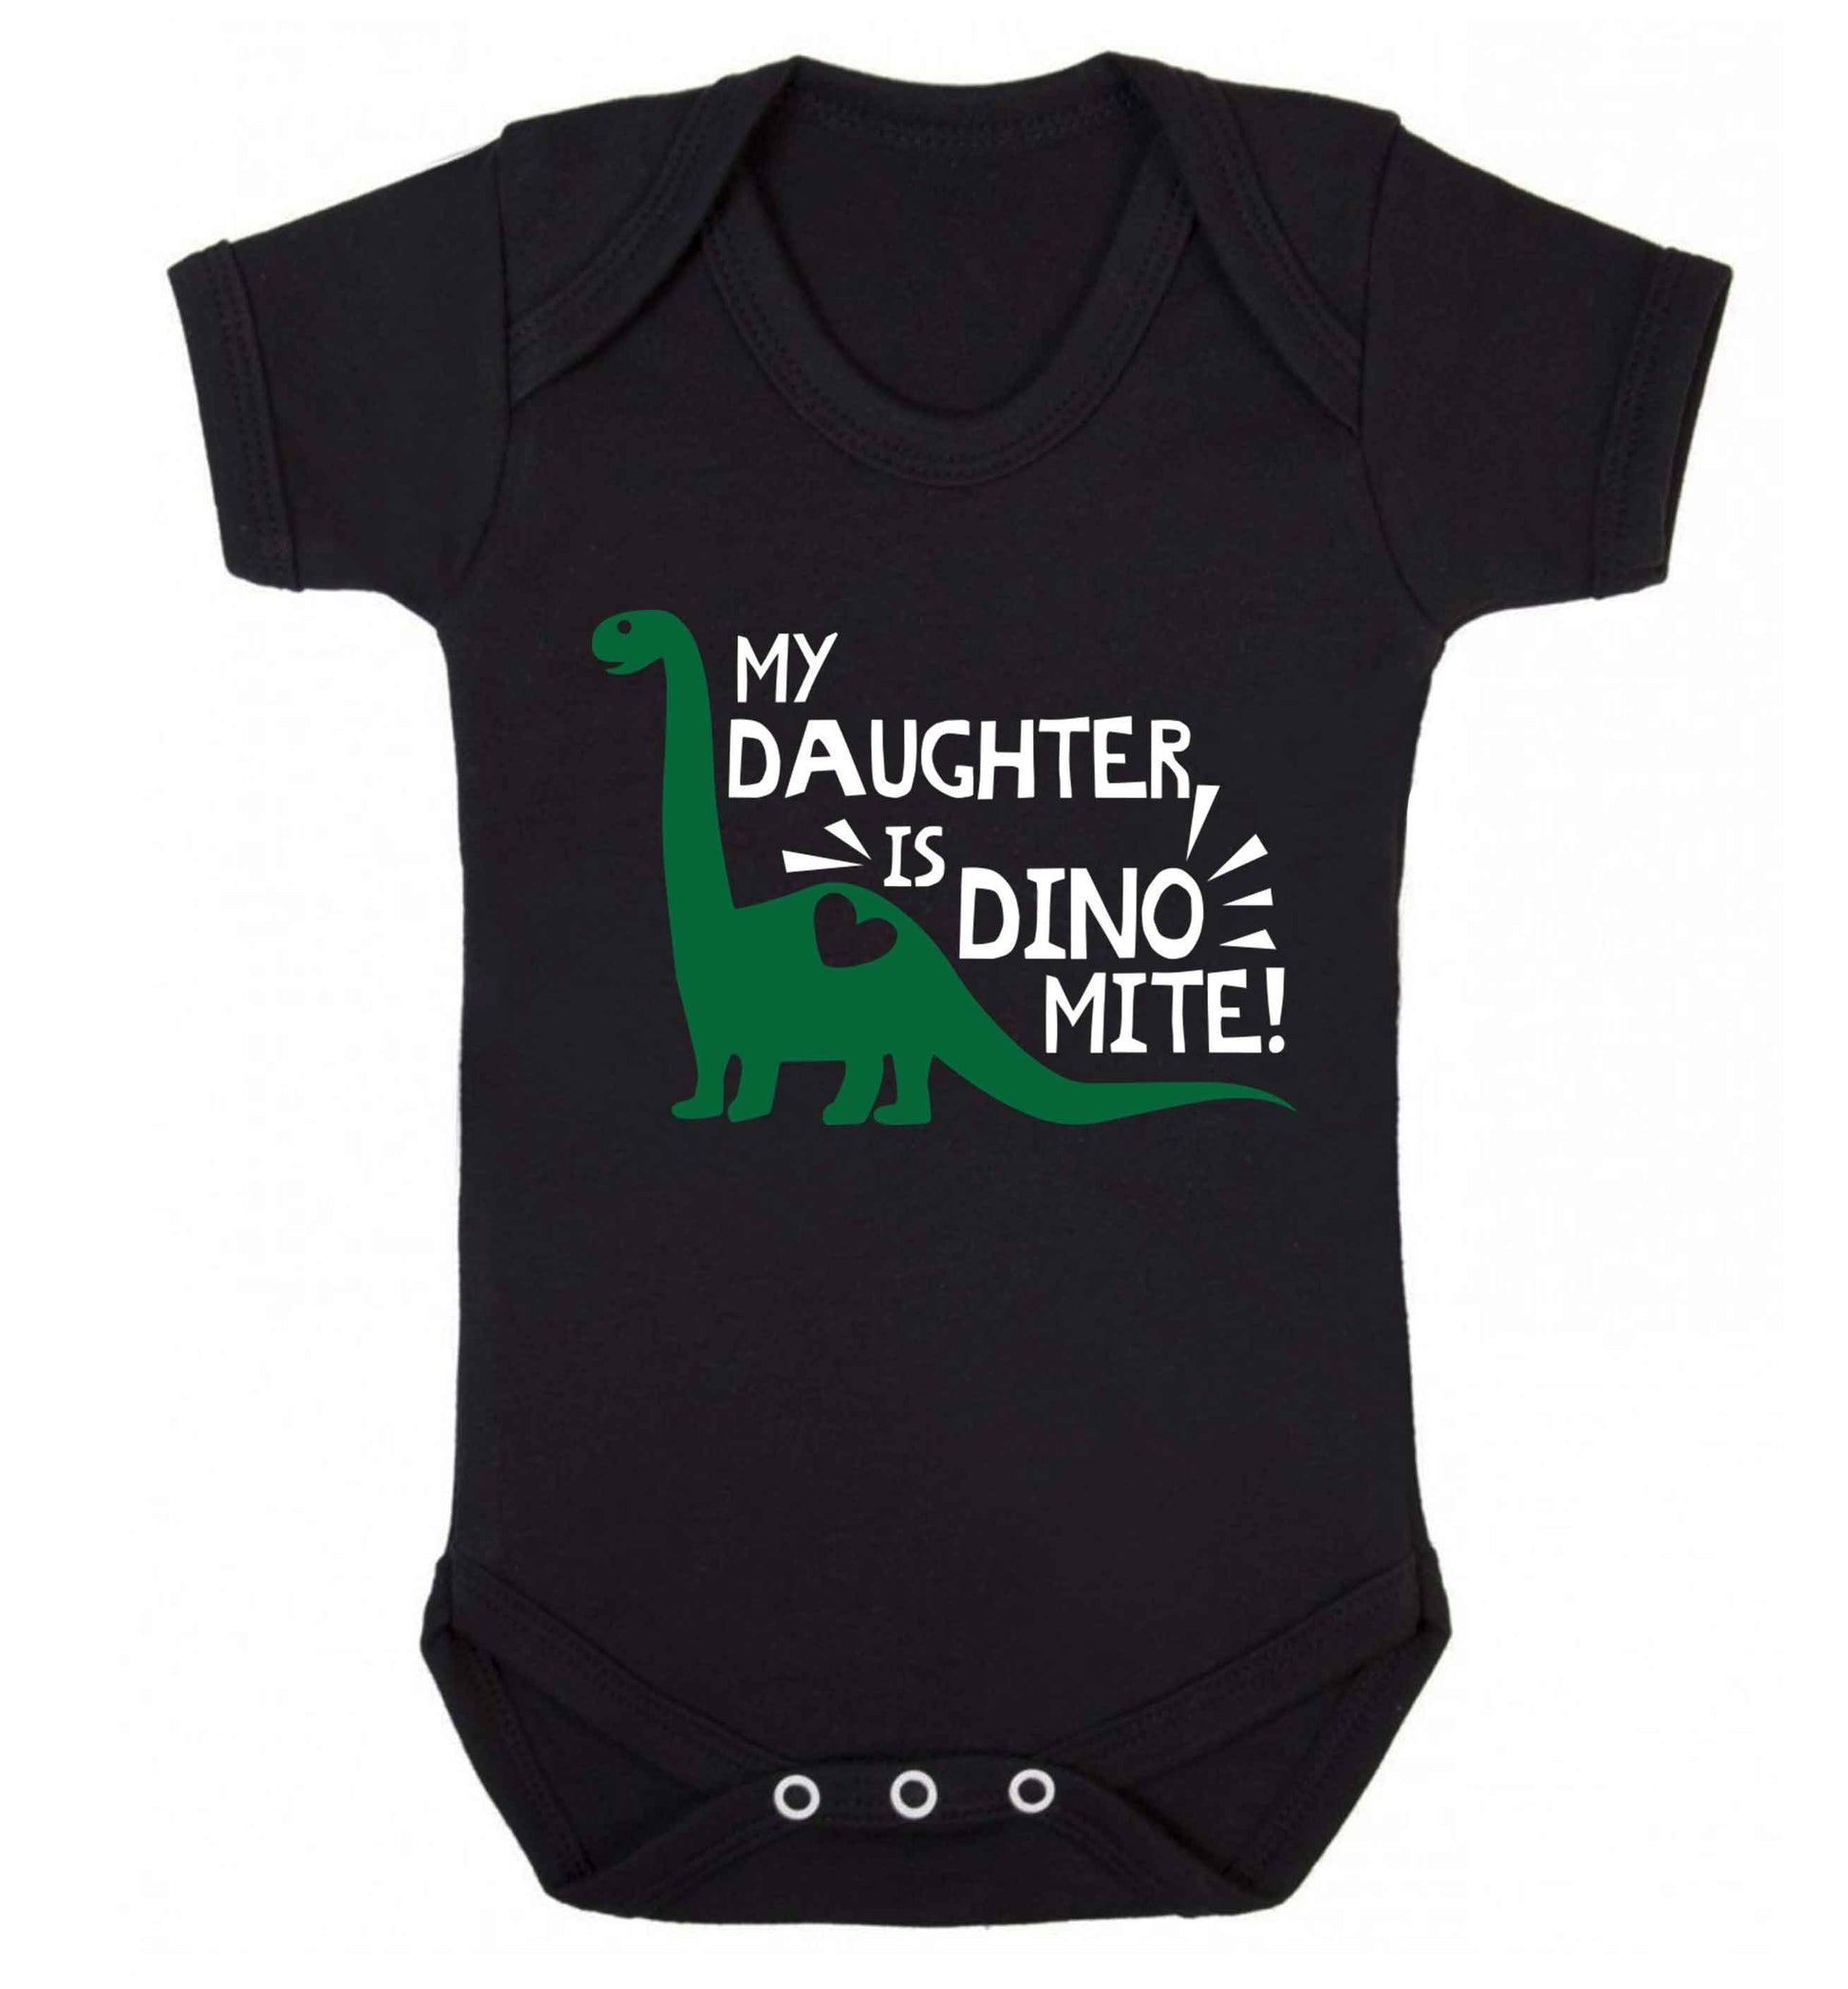 My daughter is dinomite! Baby Vest black 18-24 months